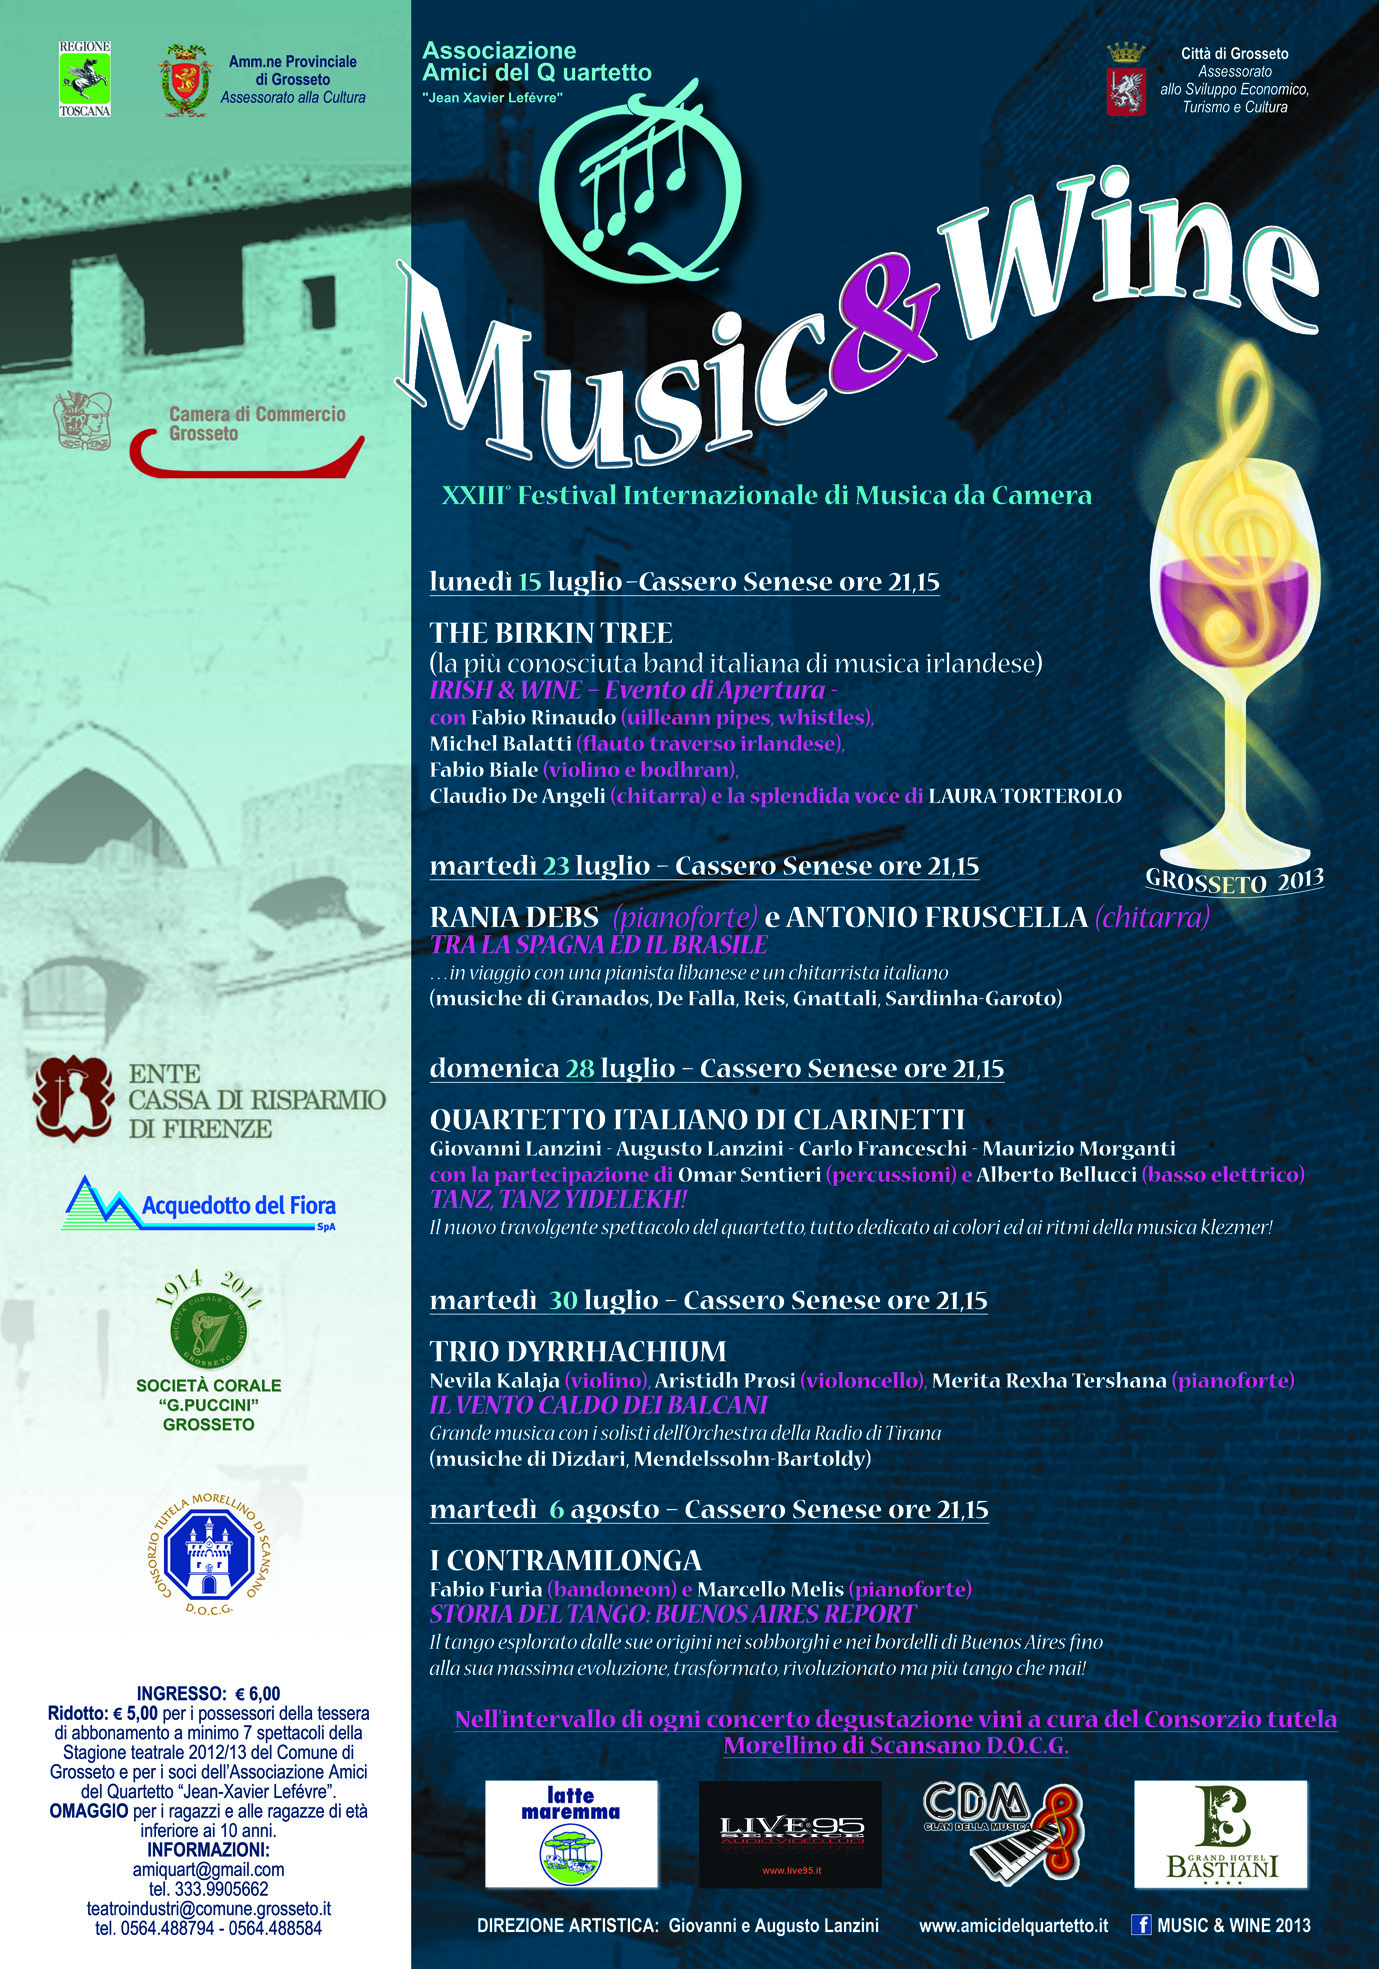 Al via la XXIII^ Edizione del Festival Internazionale Musica da Camera “Music & Wine” – Info e programma